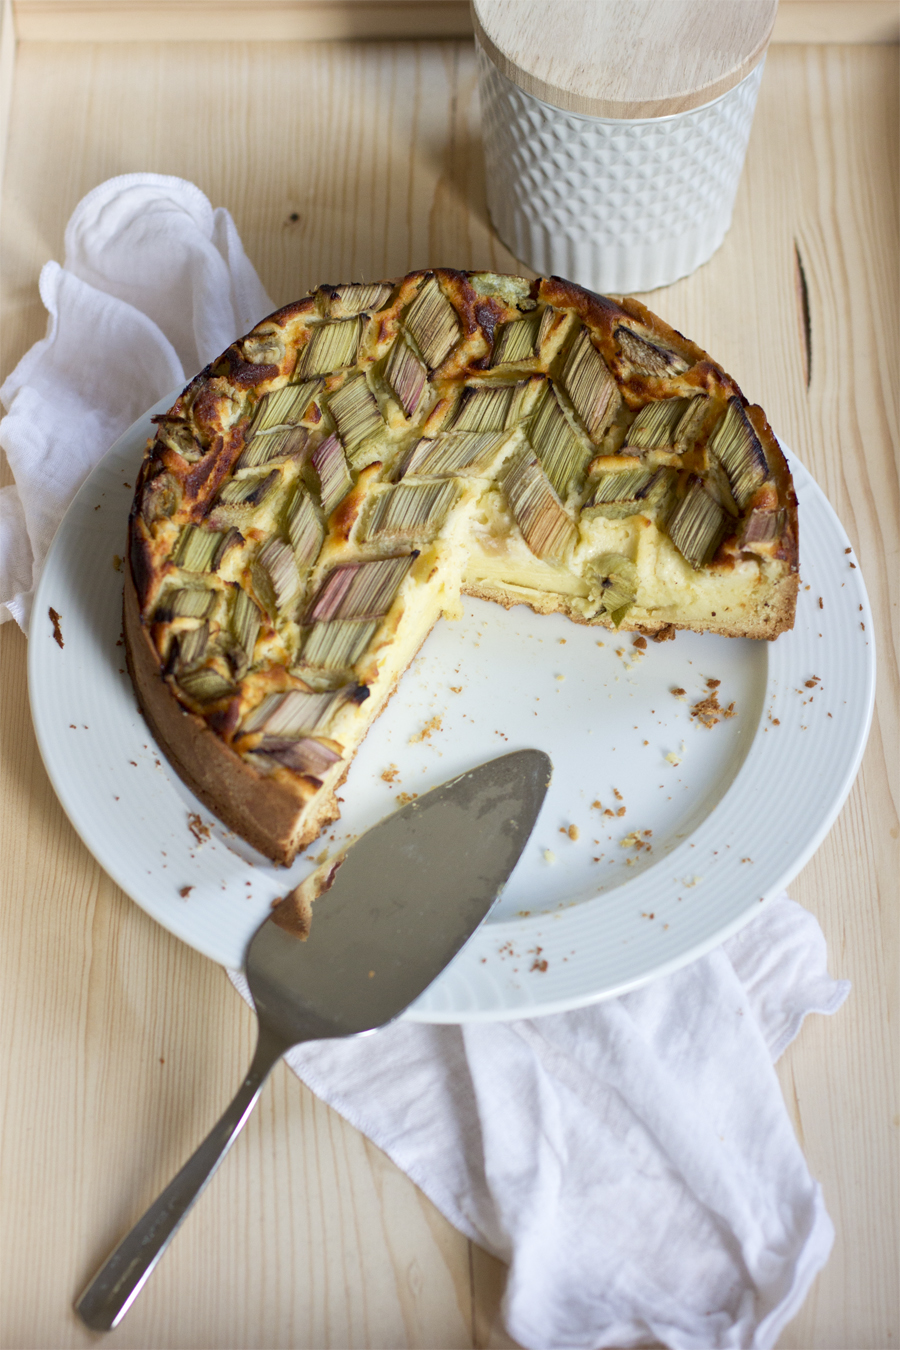 Rhubarb cream cheese cake recipe | LOOK WHAT I MADE ...